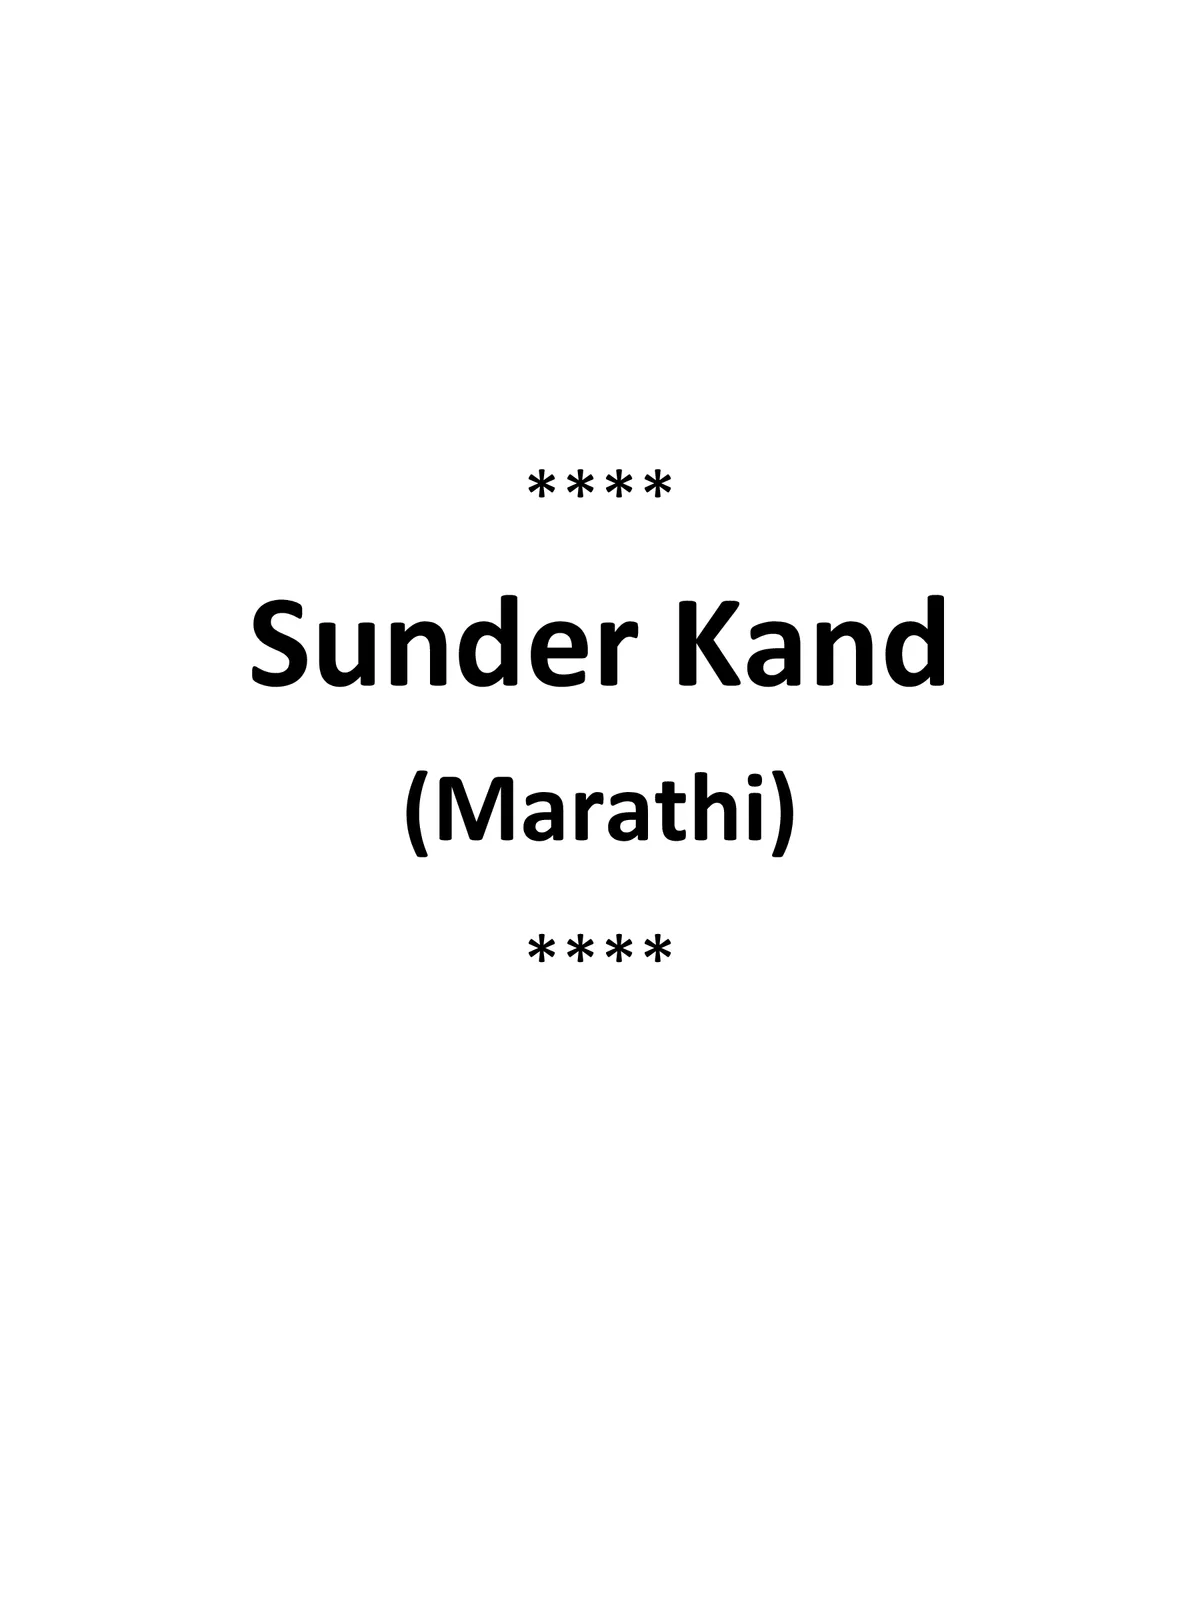 Sunder Kand Marathi